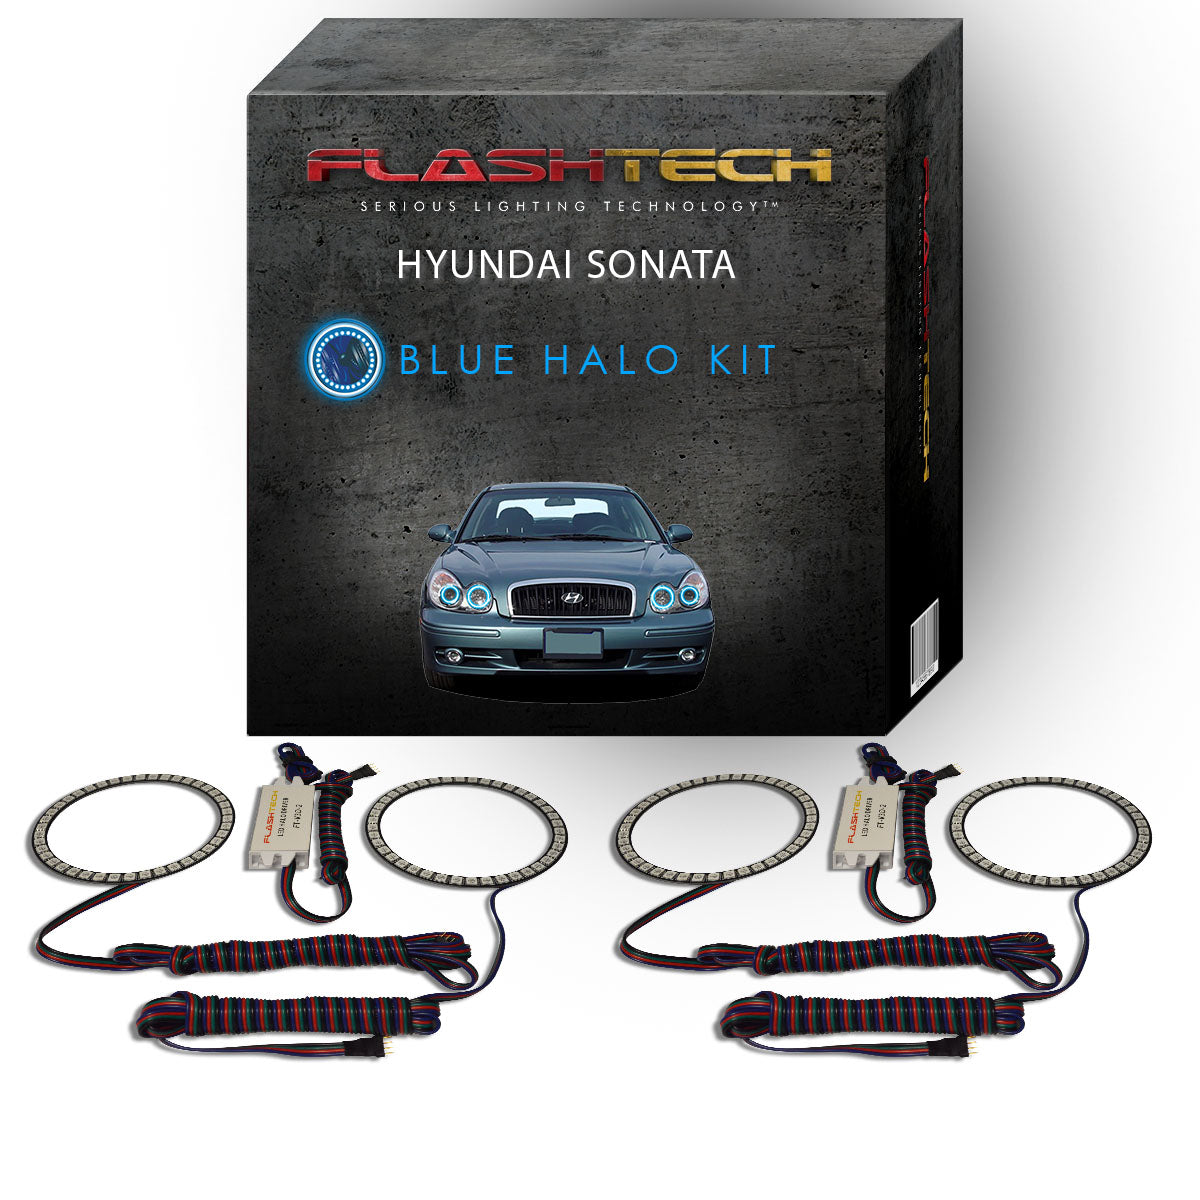 Hyundai-Sonata-2002, 2003, 2004, 2005-LED-Halo-Headlights-RGB-Bluetooth RF Remote-HY-SO0205-V3HBTRF